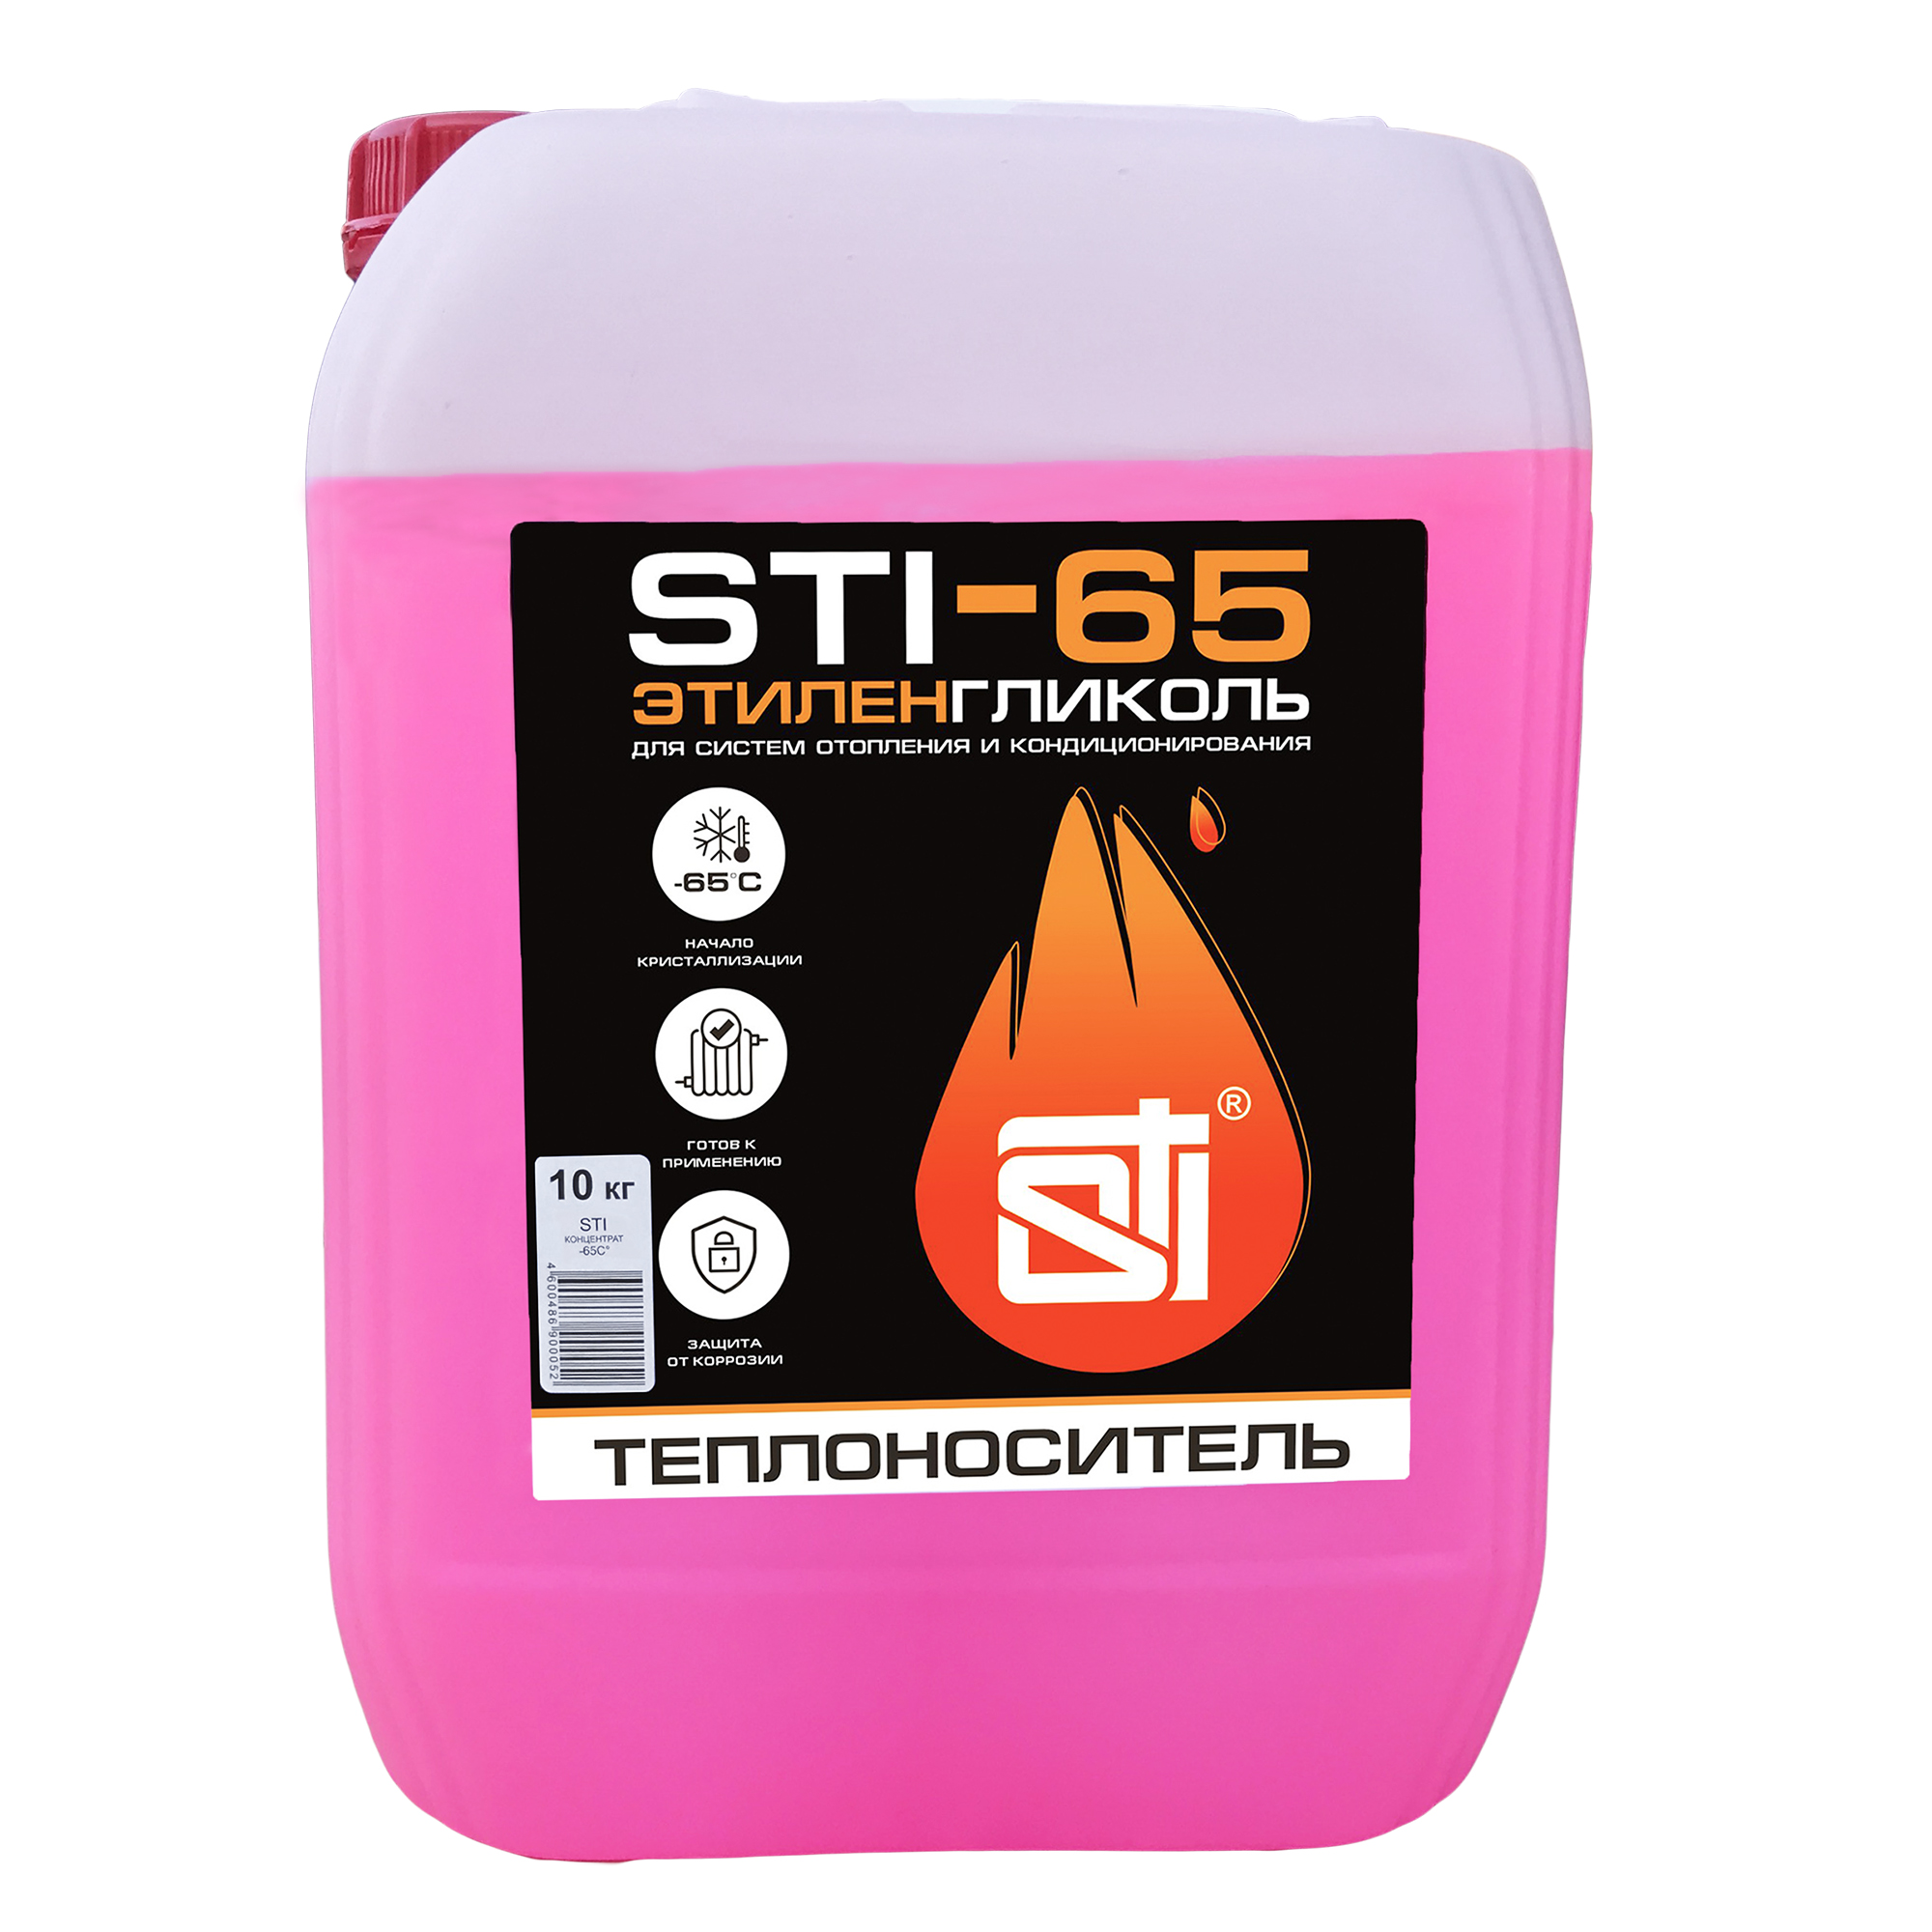 Теплоноситель (антифриз) STI этиленгликоль (-65°C) 10 кг. - фото